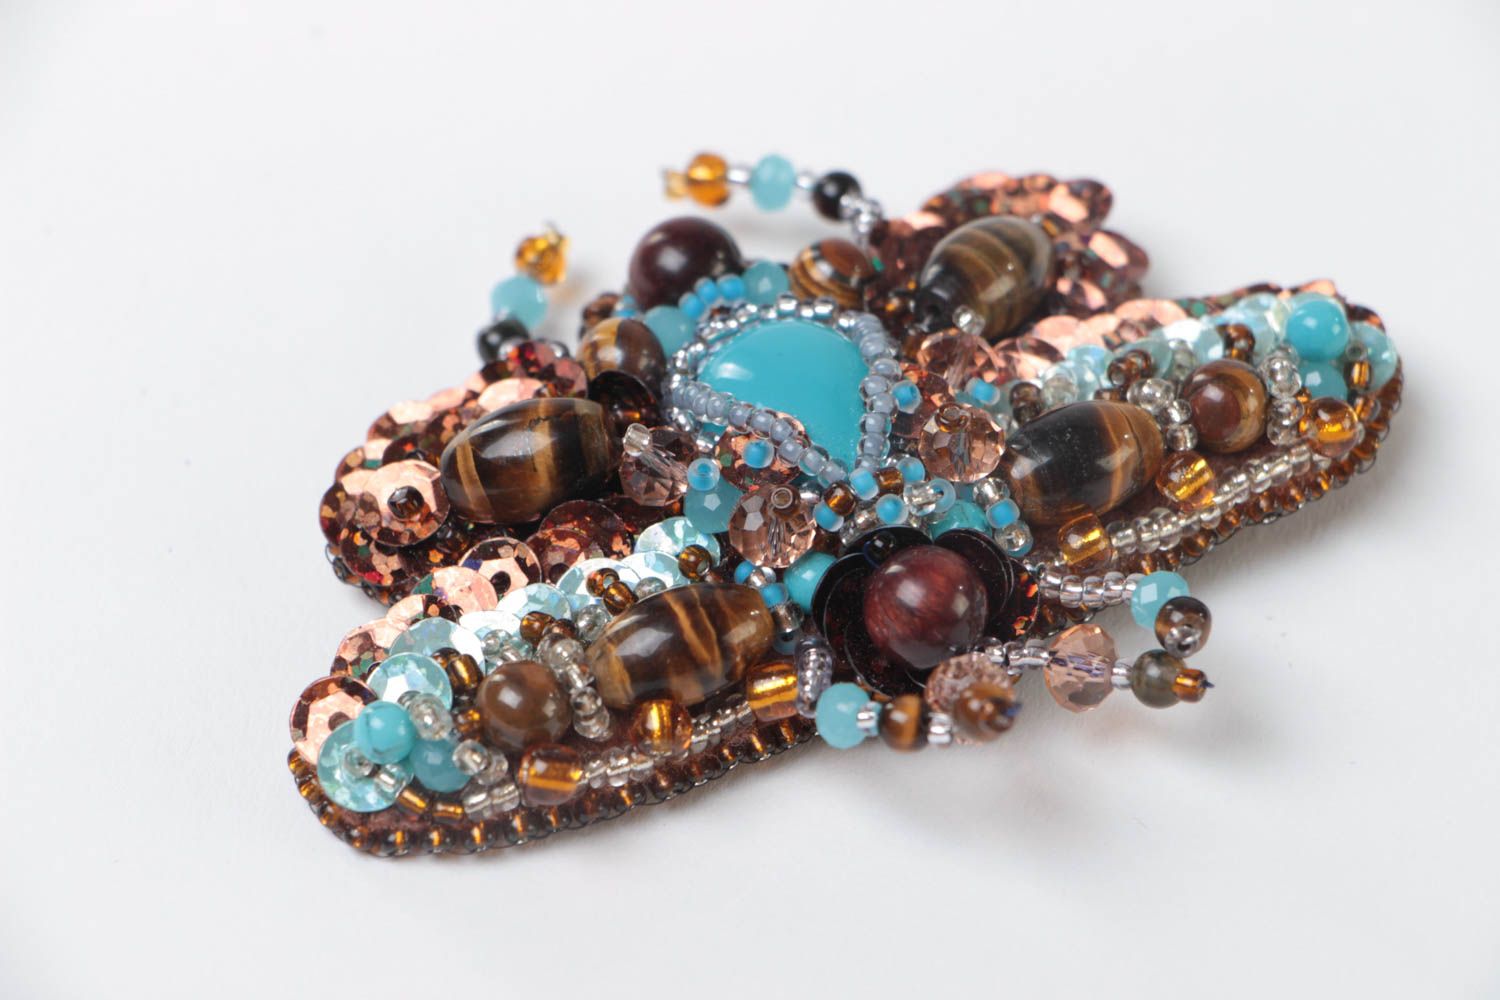 Объемная брошь с вышивкой бисером и камнями ручной работы в виде жука голубая фото 3